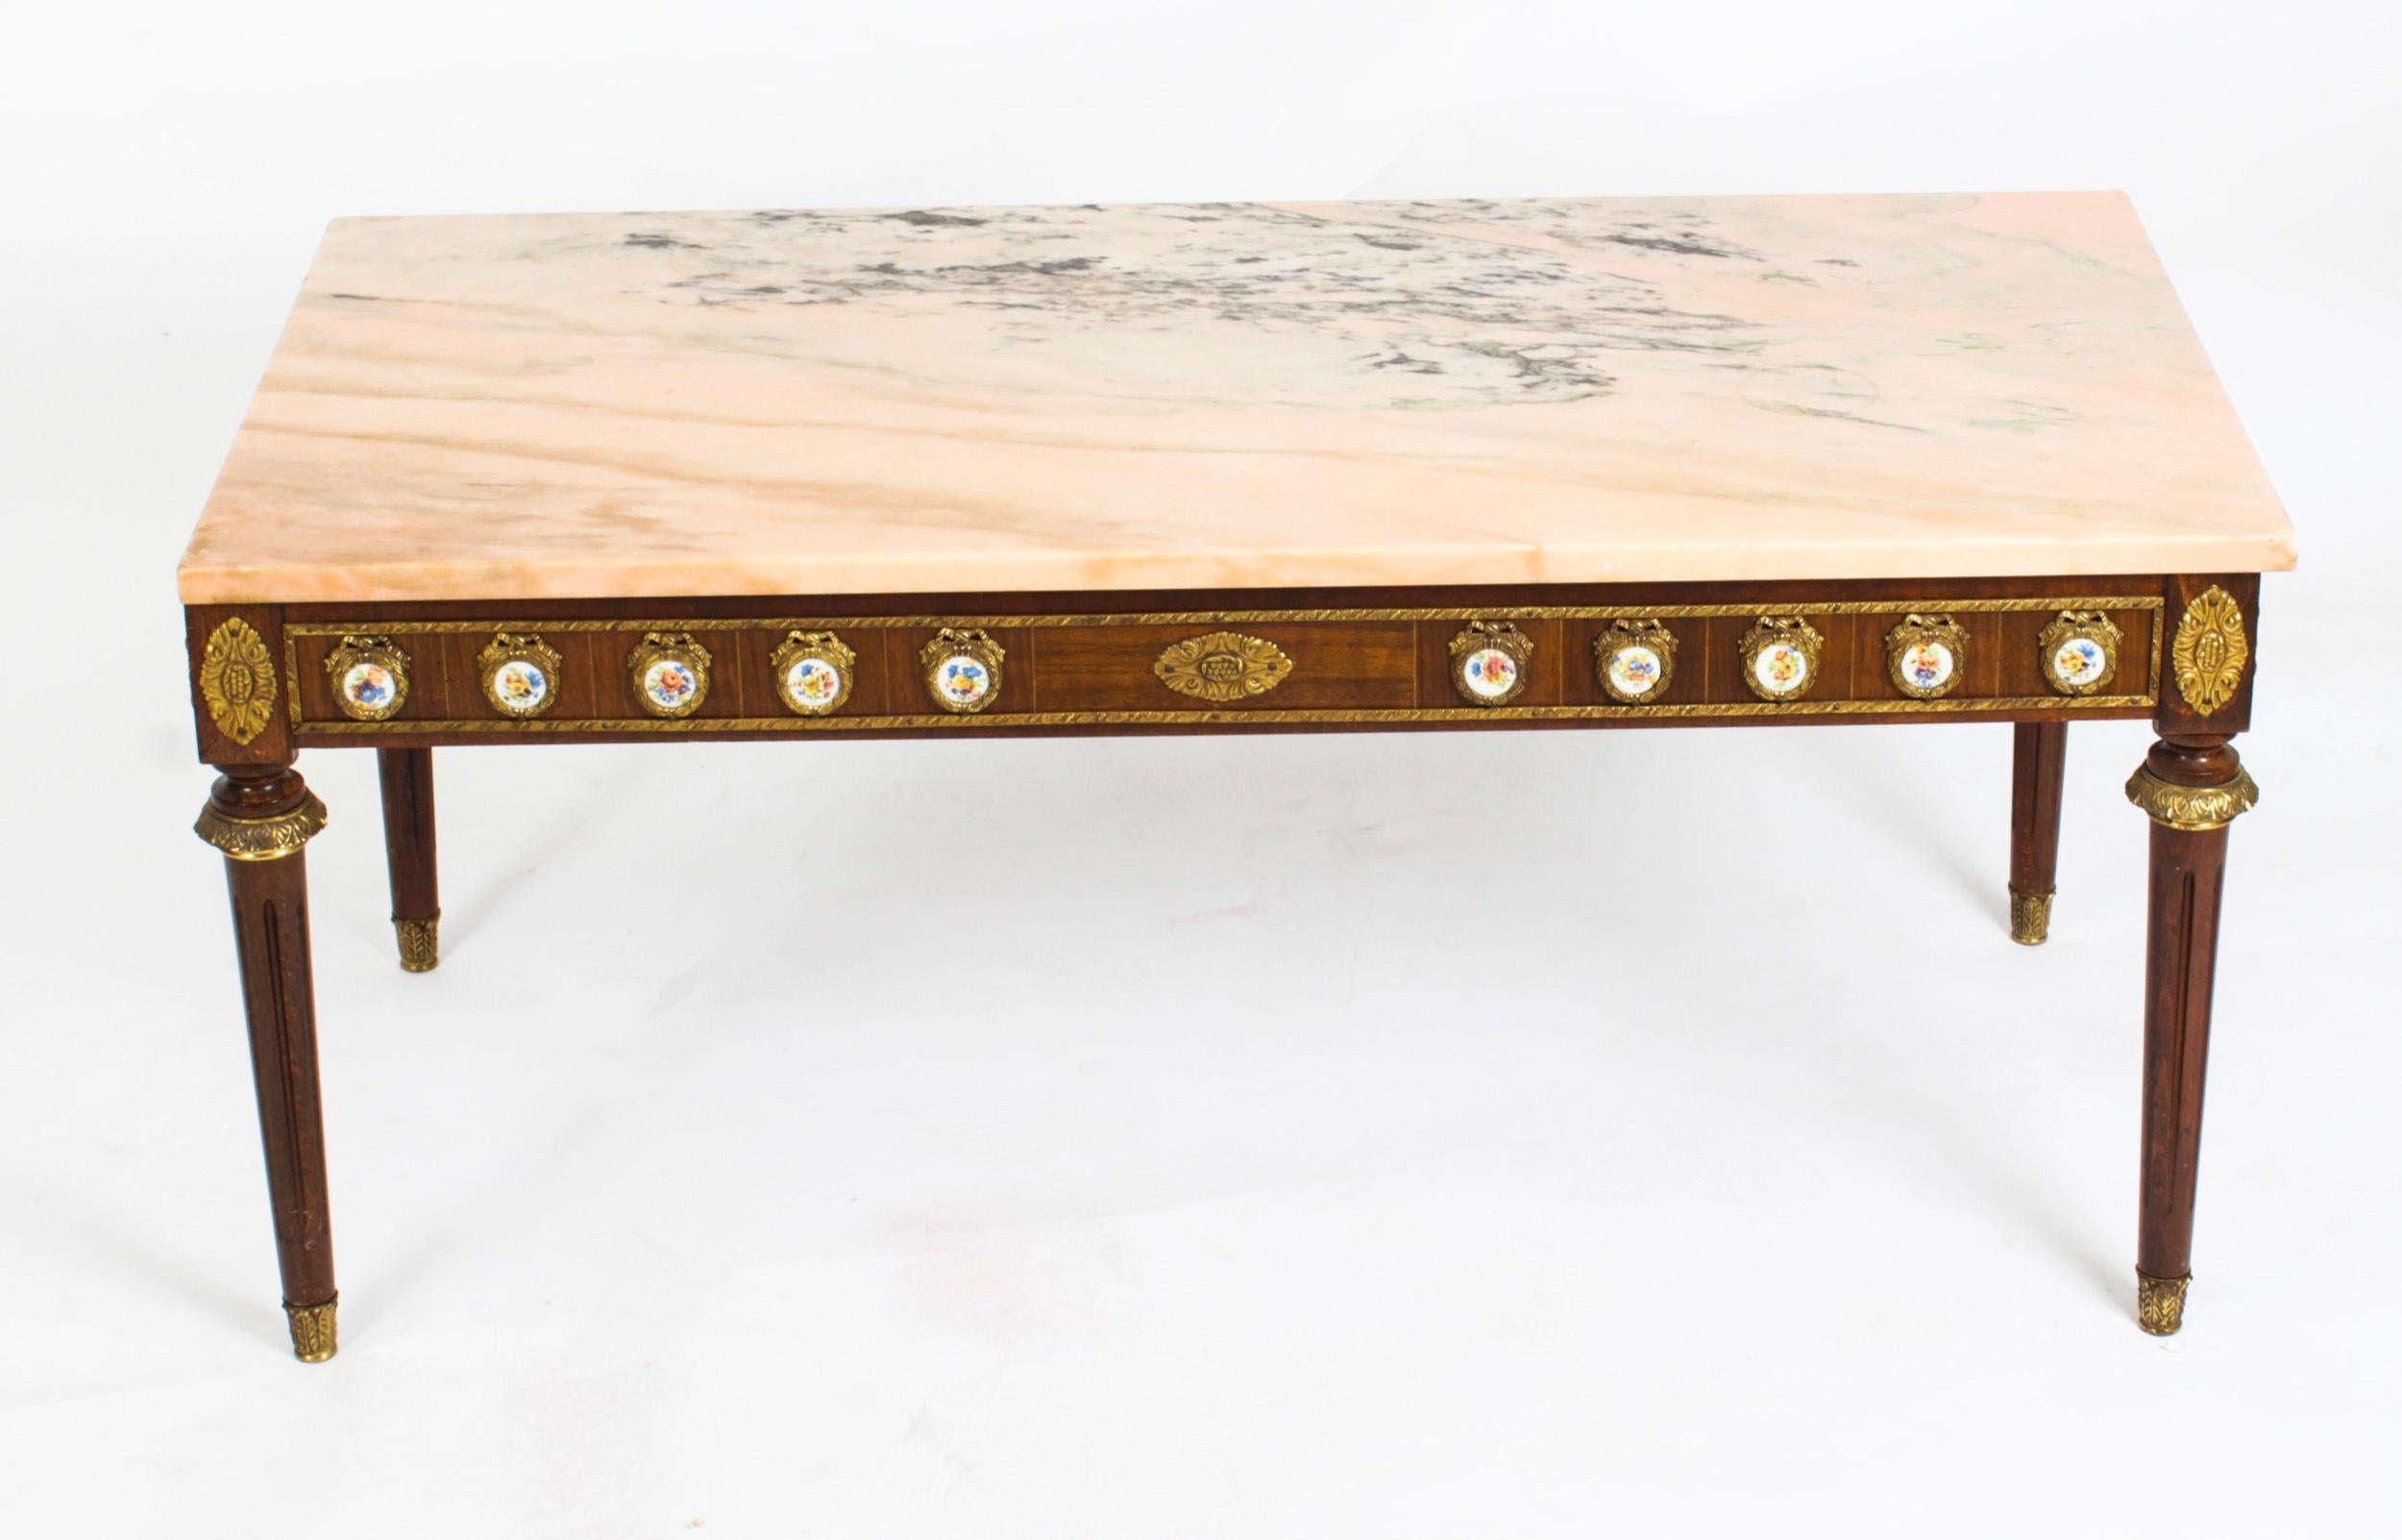 Il s'agit d'une exquise table basse en noyer et marbre monté en bronze doré, datant d'environ 1950 et réalisée par les célèbres fabricants de meubles H & L Epstein.

Cette merveilleuse table basse est de forme rectangulaire et possède quatre pieds